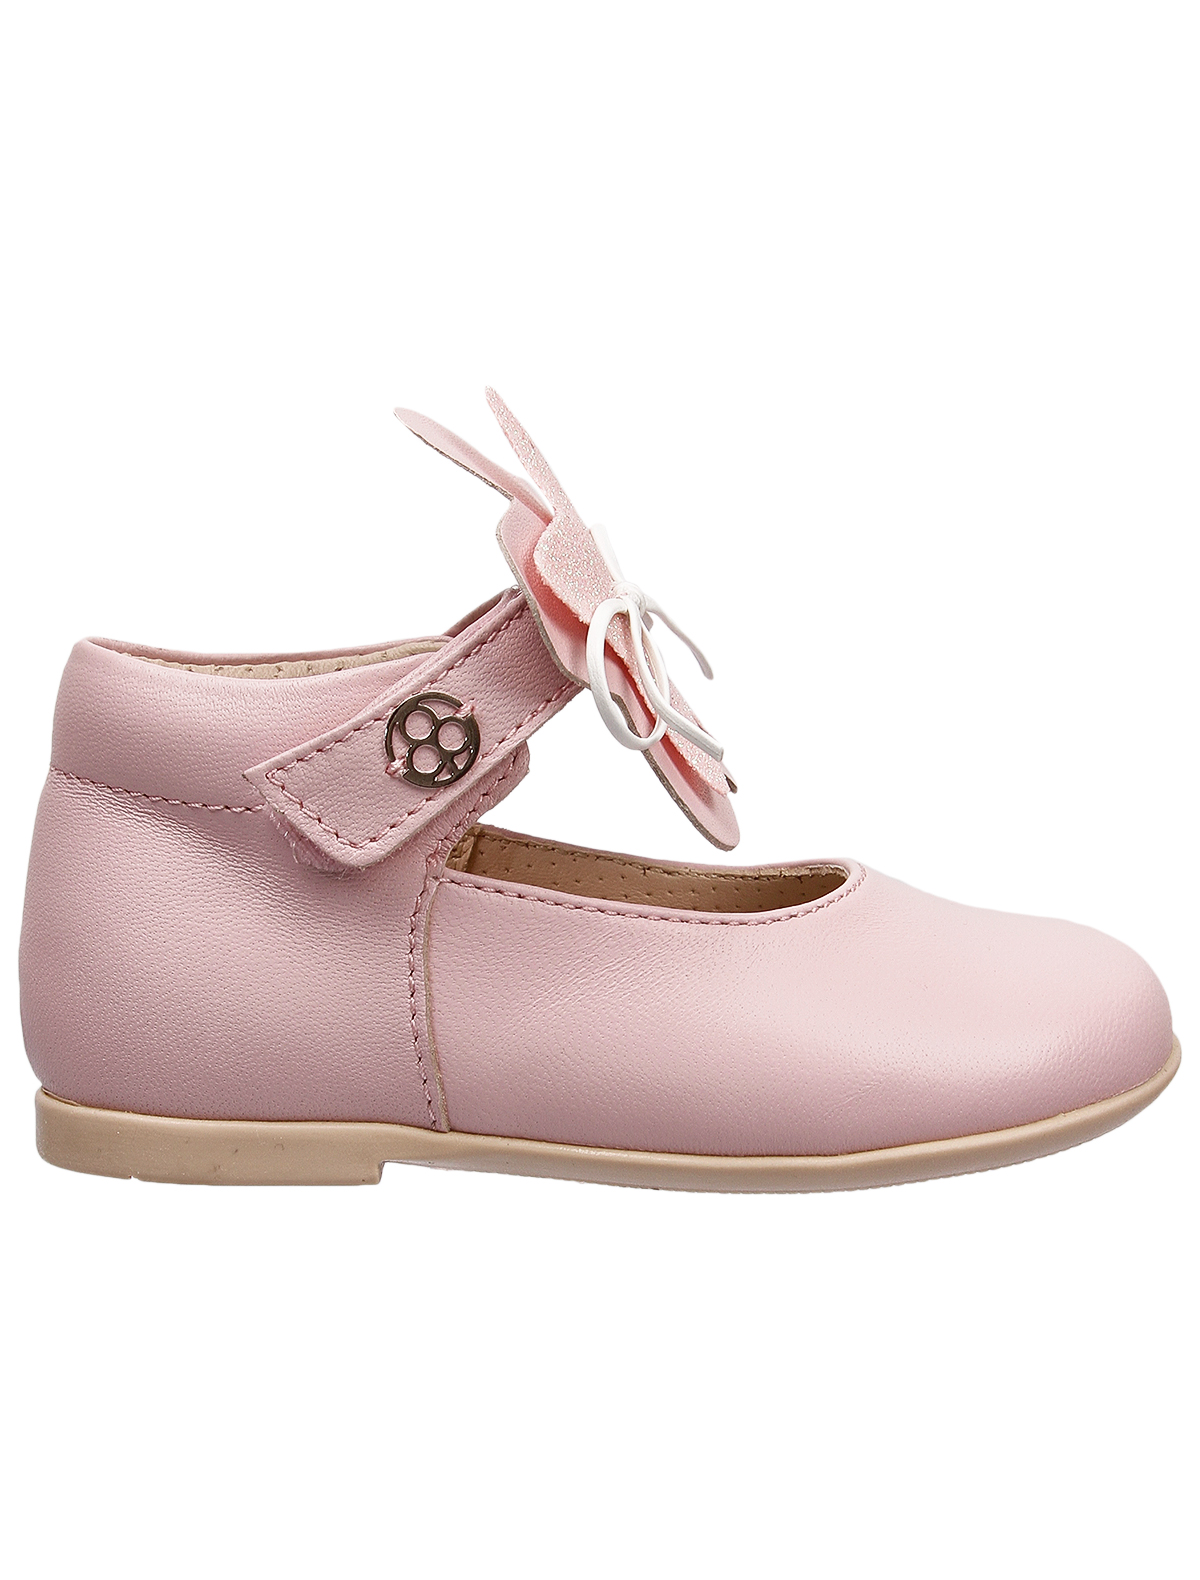 Туфли Florens 2442841, цвет розовый, размер 26 2014509271883 - фото 2